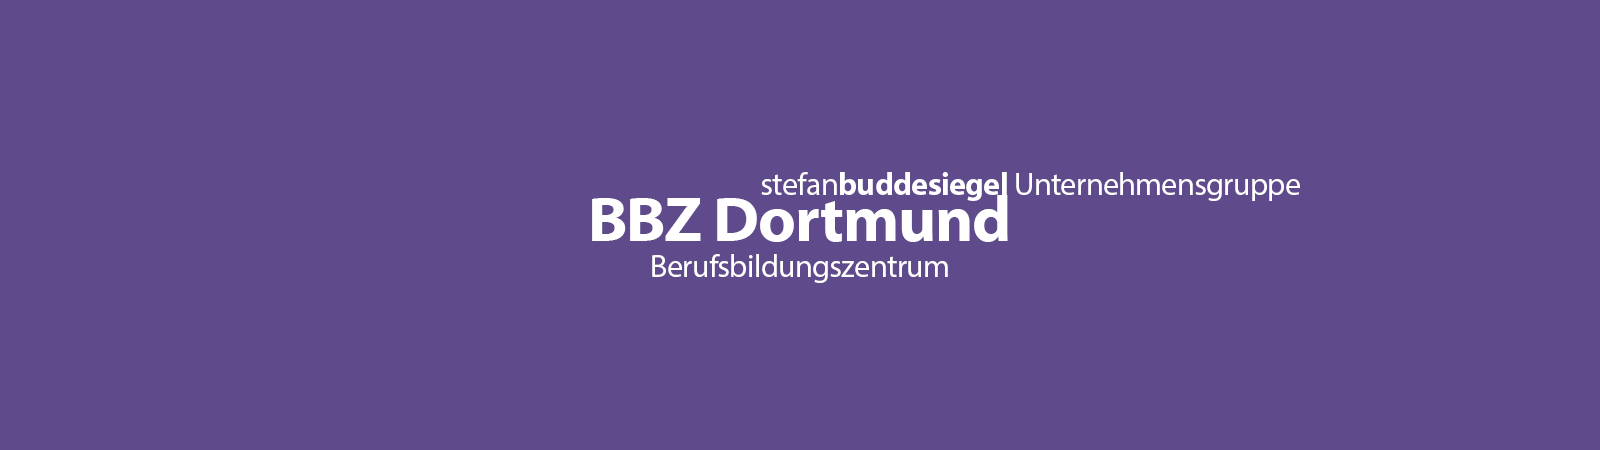 BBZ Dortmund